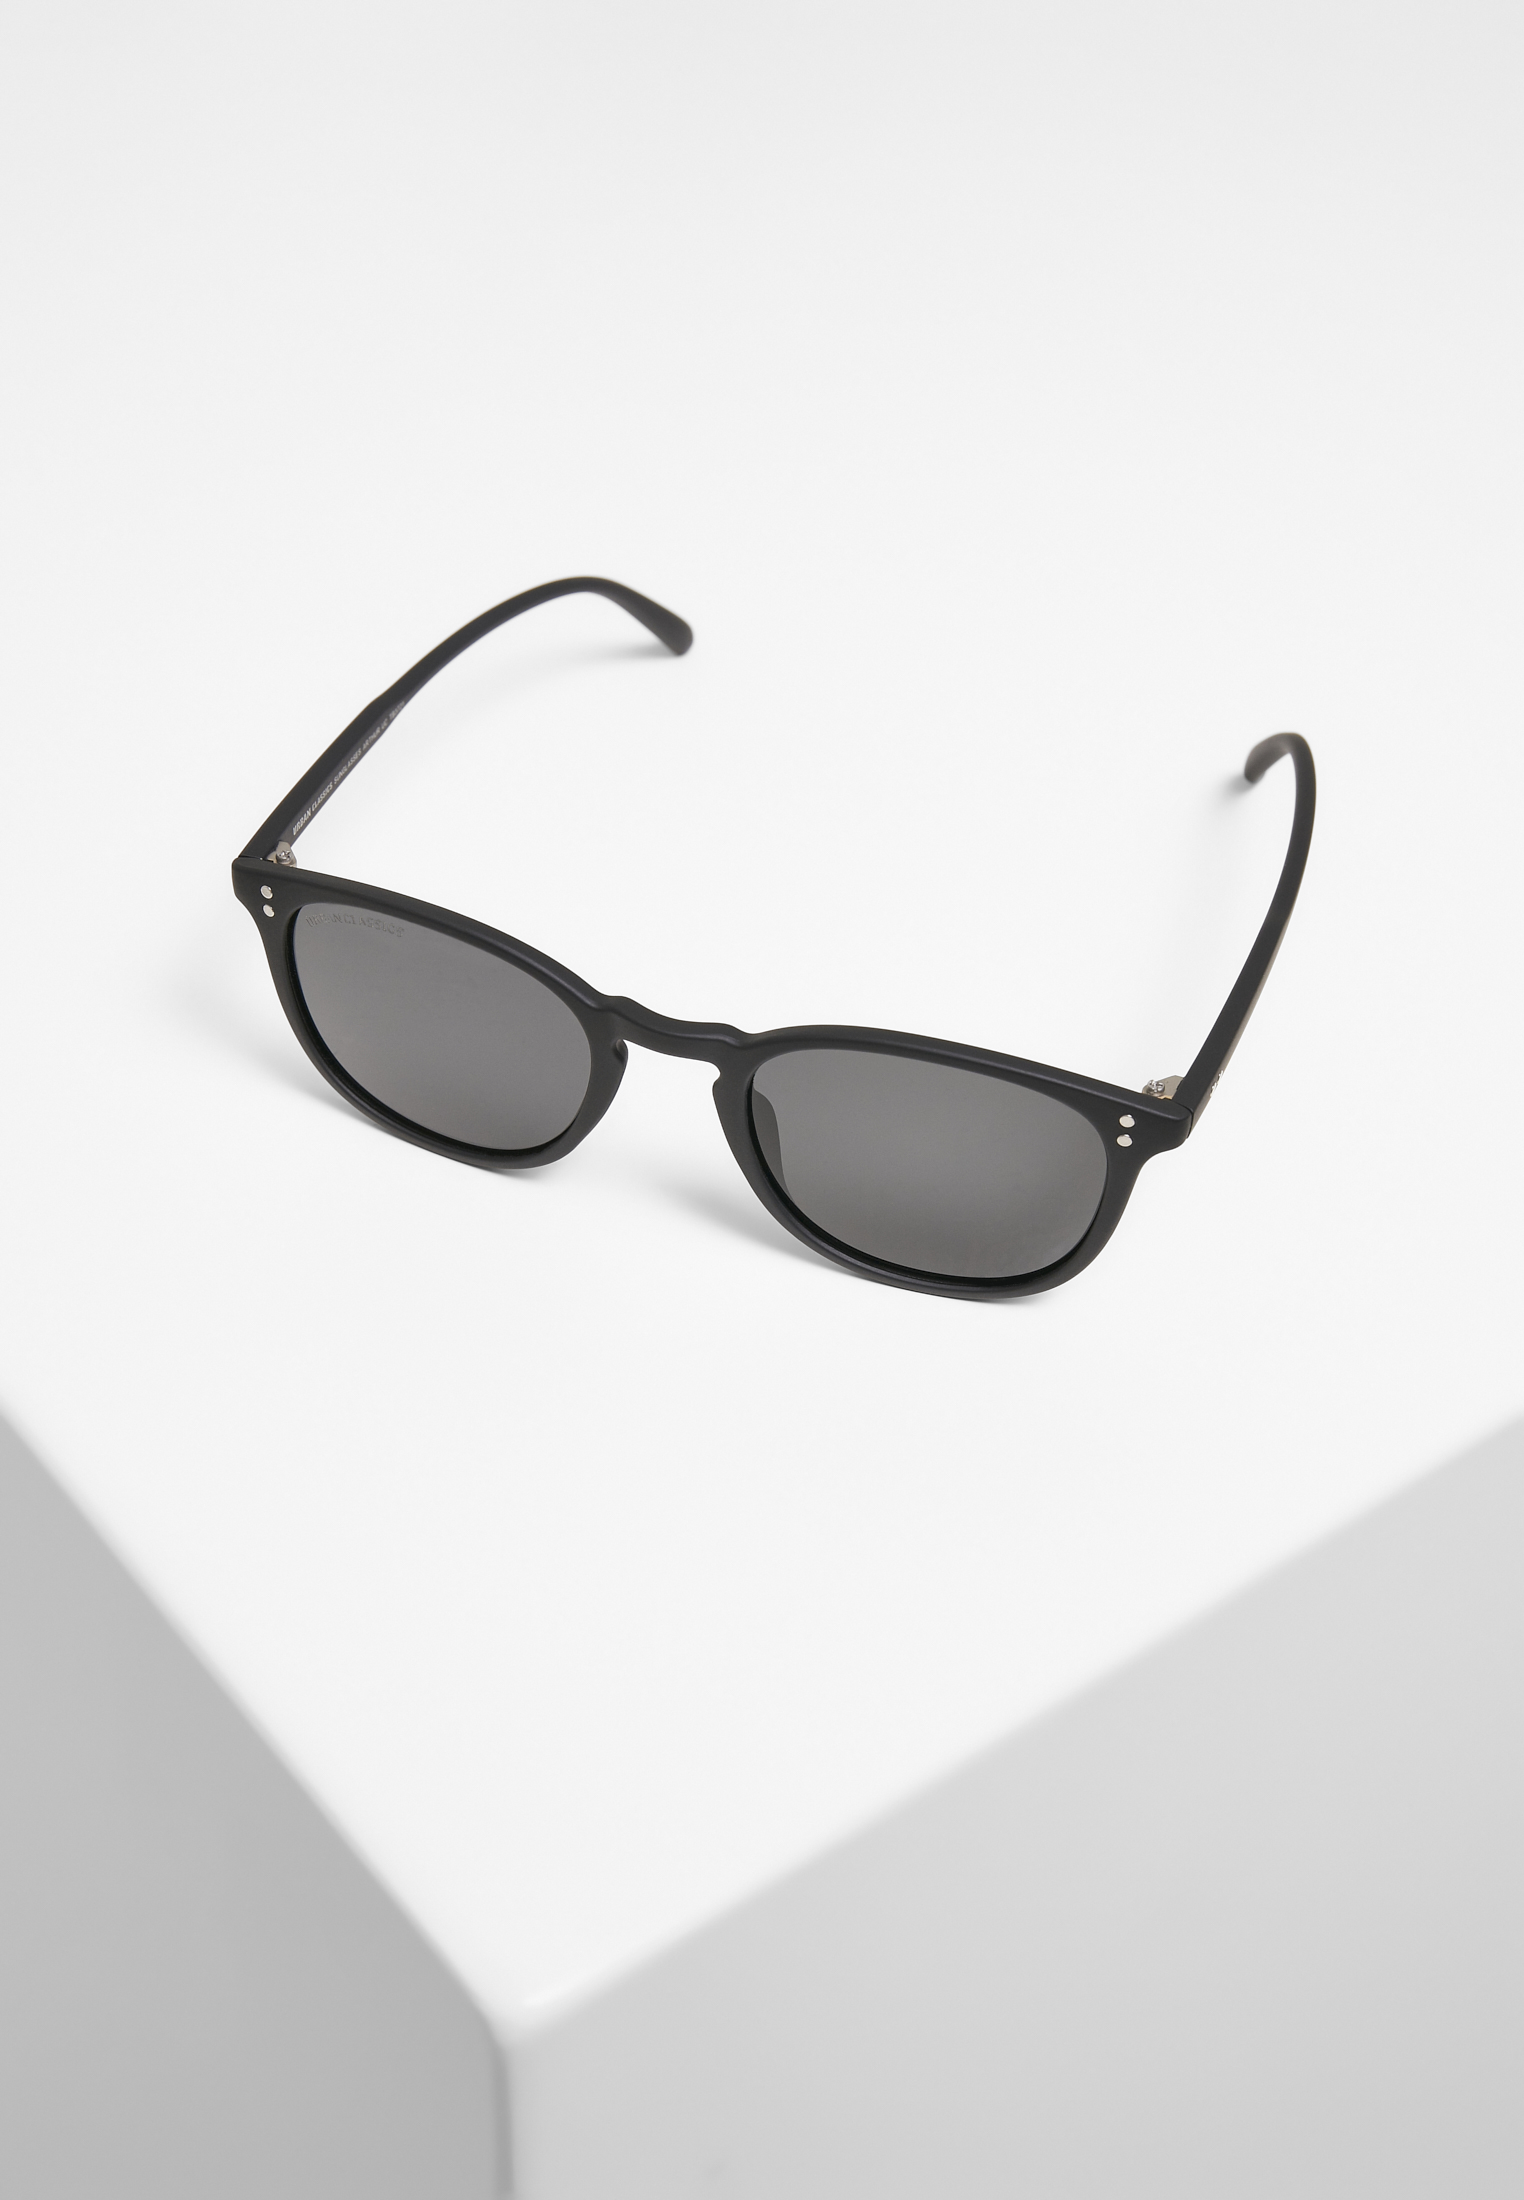 Sonnenbrillen Sunglasses Arthur UC in Farbe black/grey